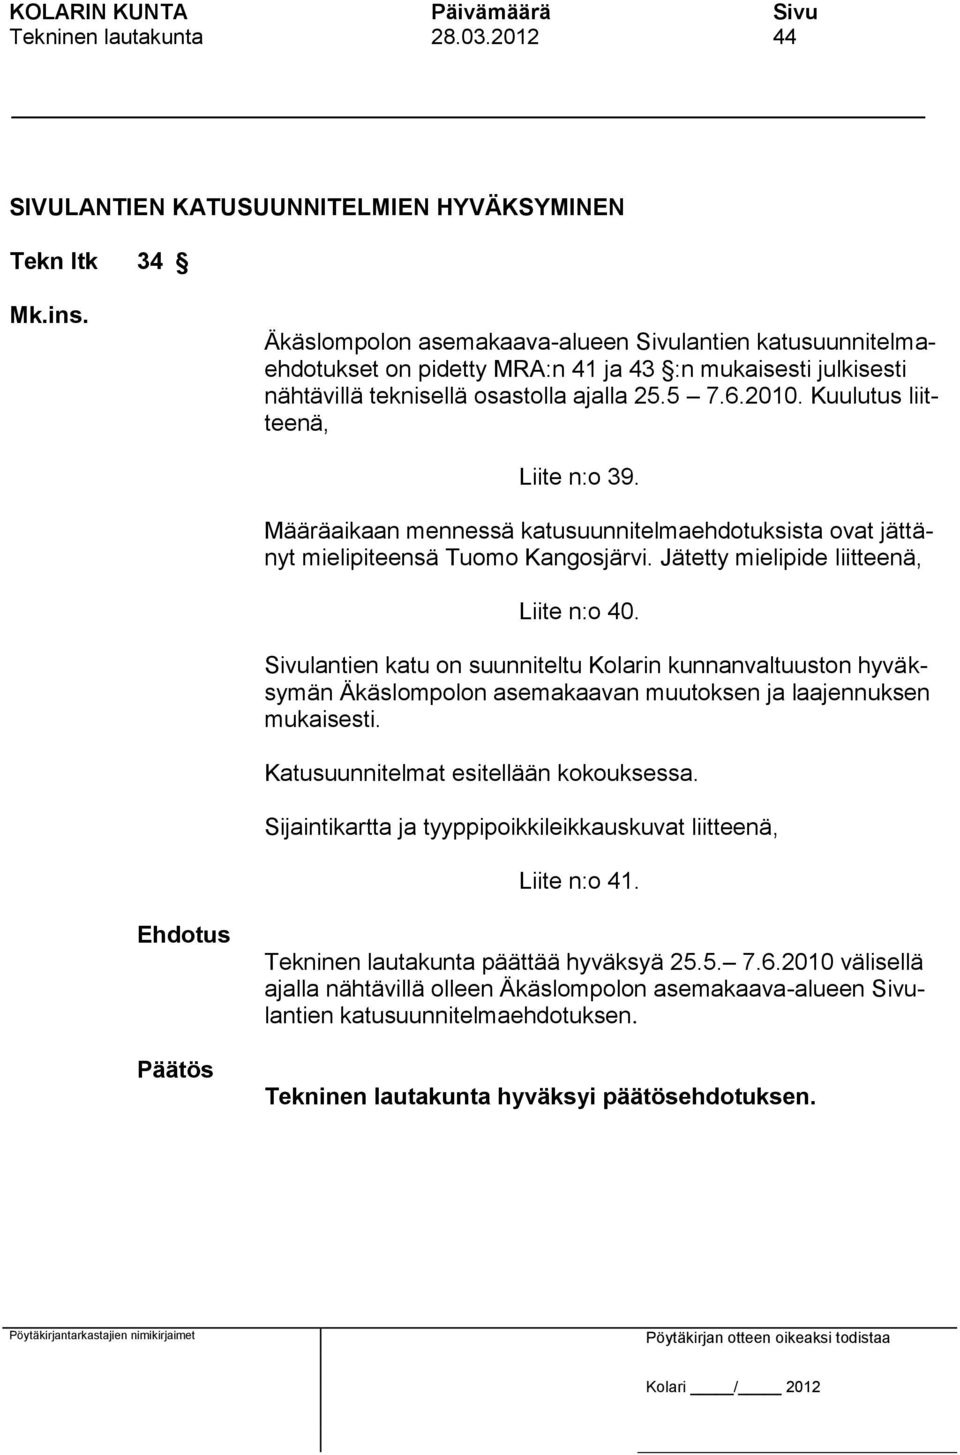 Kuulutus liitteenä, Liite n:o 39. Määräaikaan mennessä katusuunnitelmaehdotuksista ovat jättänyt mielipiteensä Tuomo Kangosjärvi. Jätetty mielipide liitteenä, Liite n:o 40.